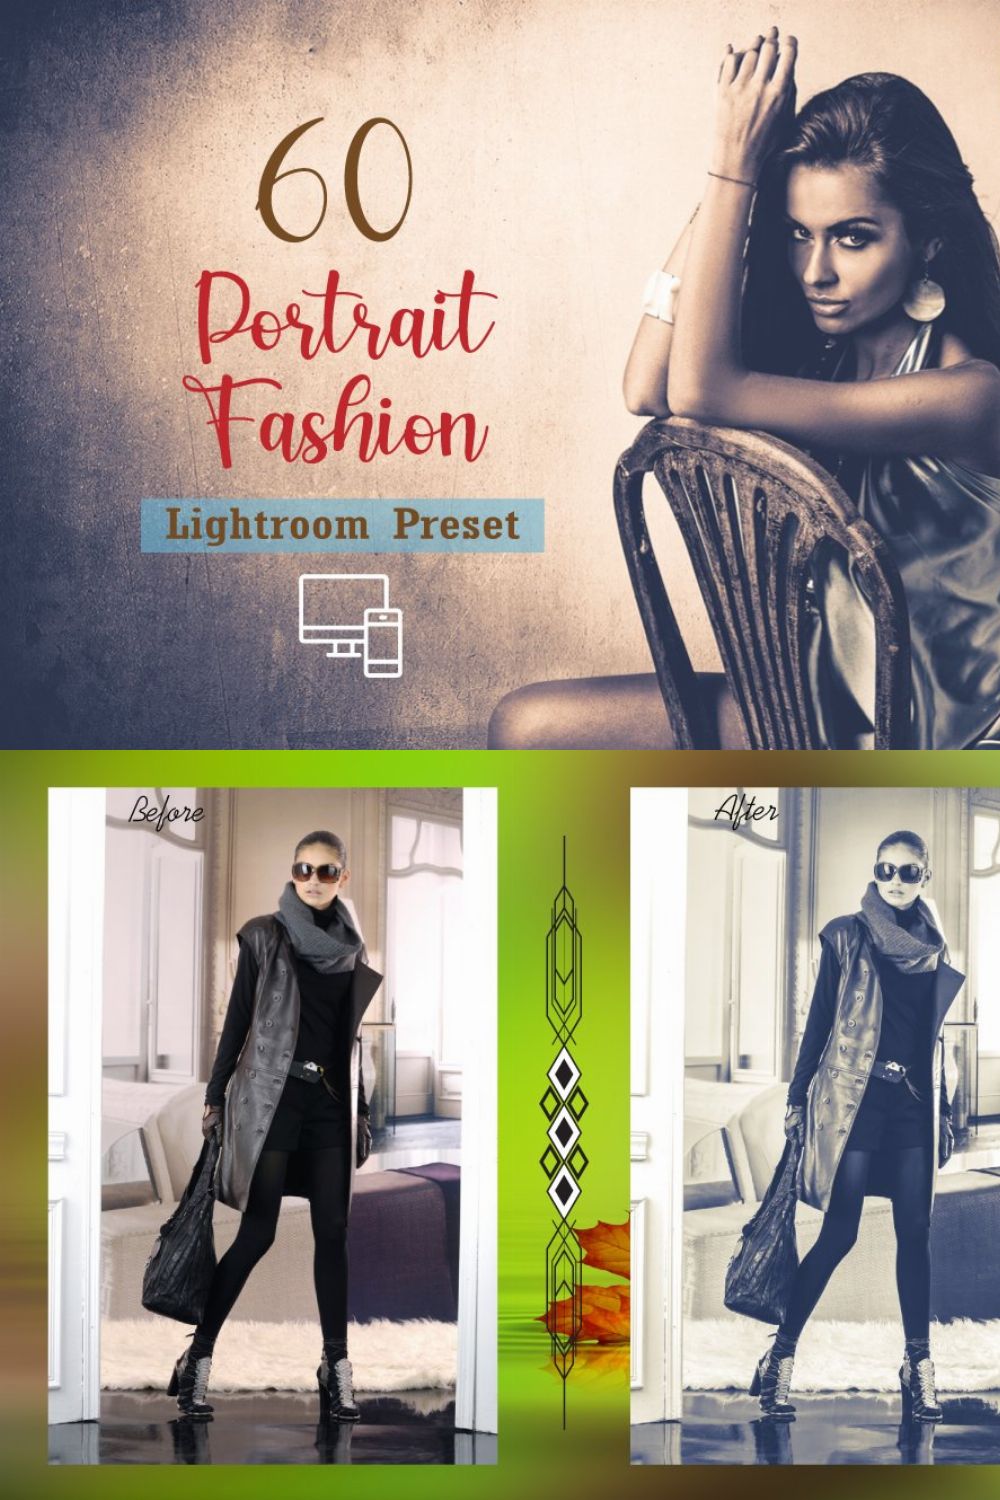 60 Portrait Fashion Lightroom Preset pinterest preview image.